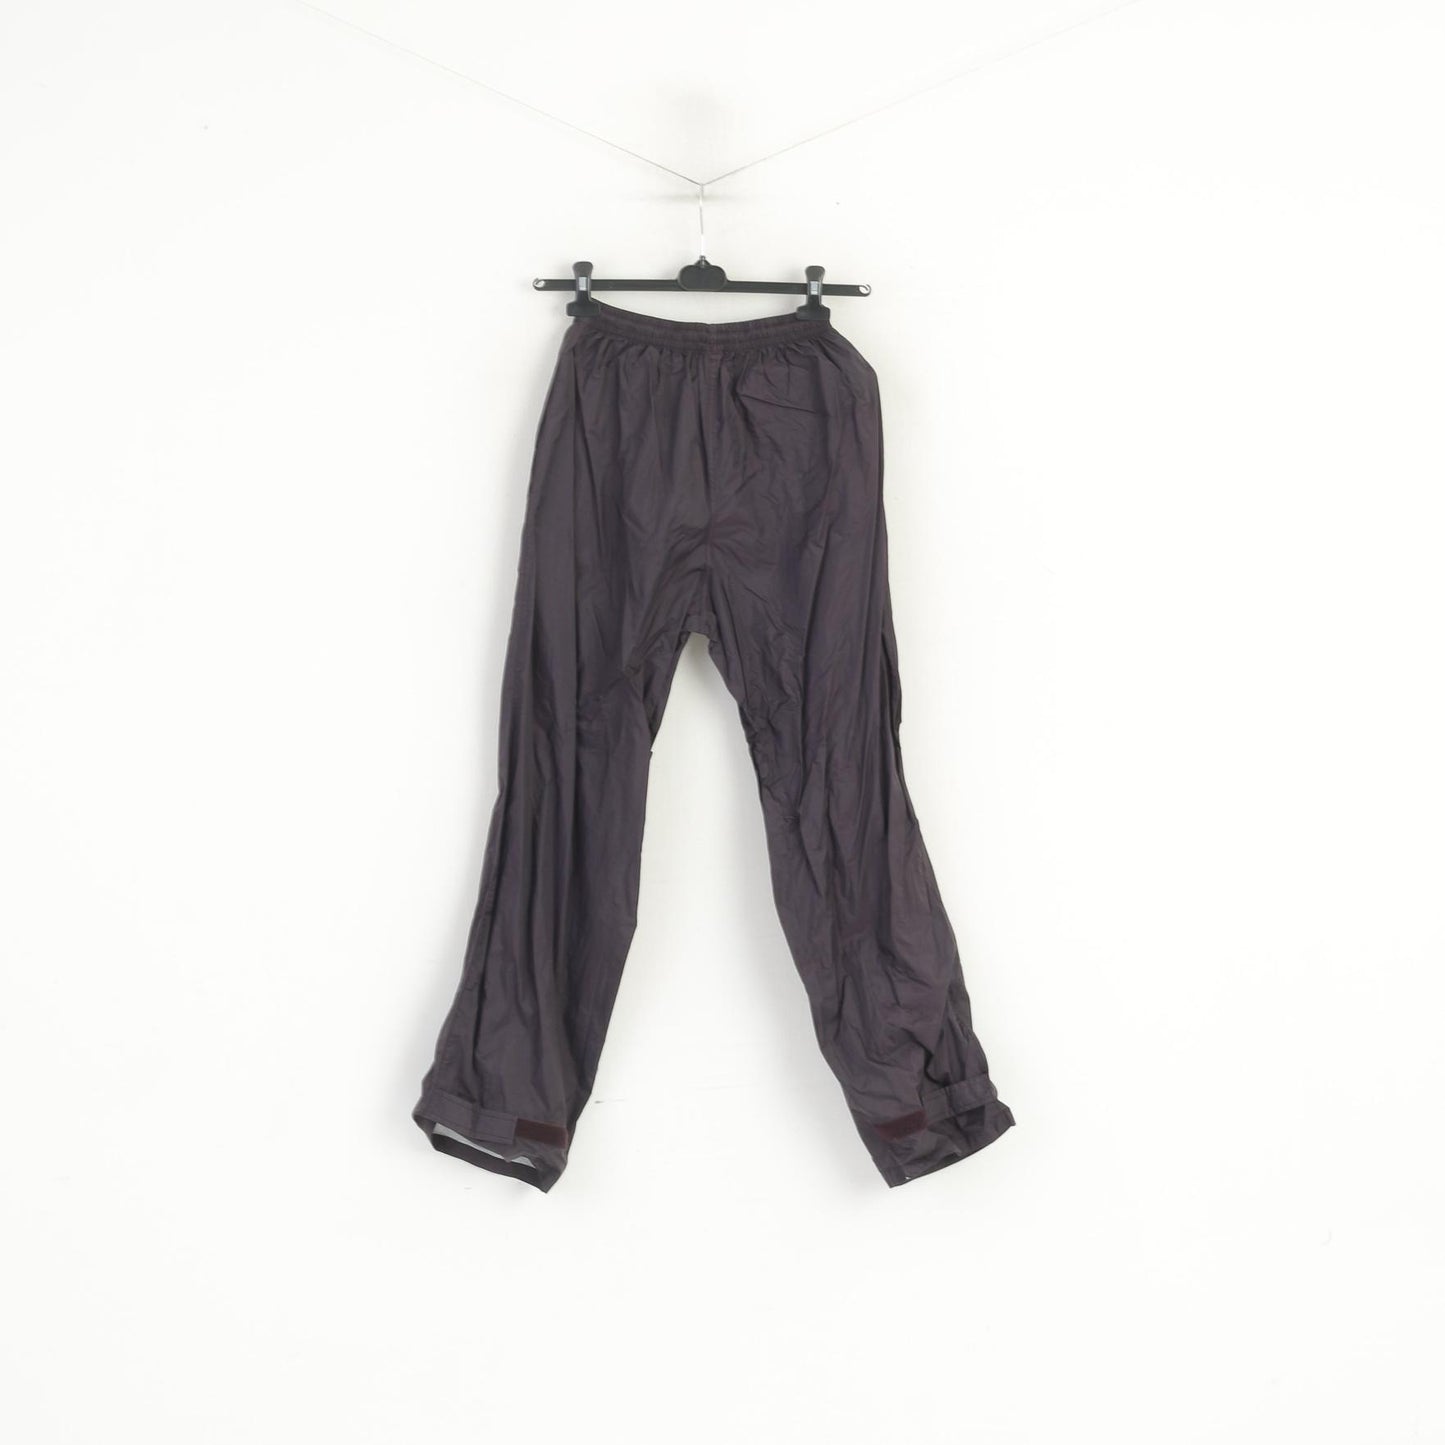 Pantaloni vintage da uomo S neri viola lucidi Pantaloni leggeri da esterno impermeabili al 100% in nylon